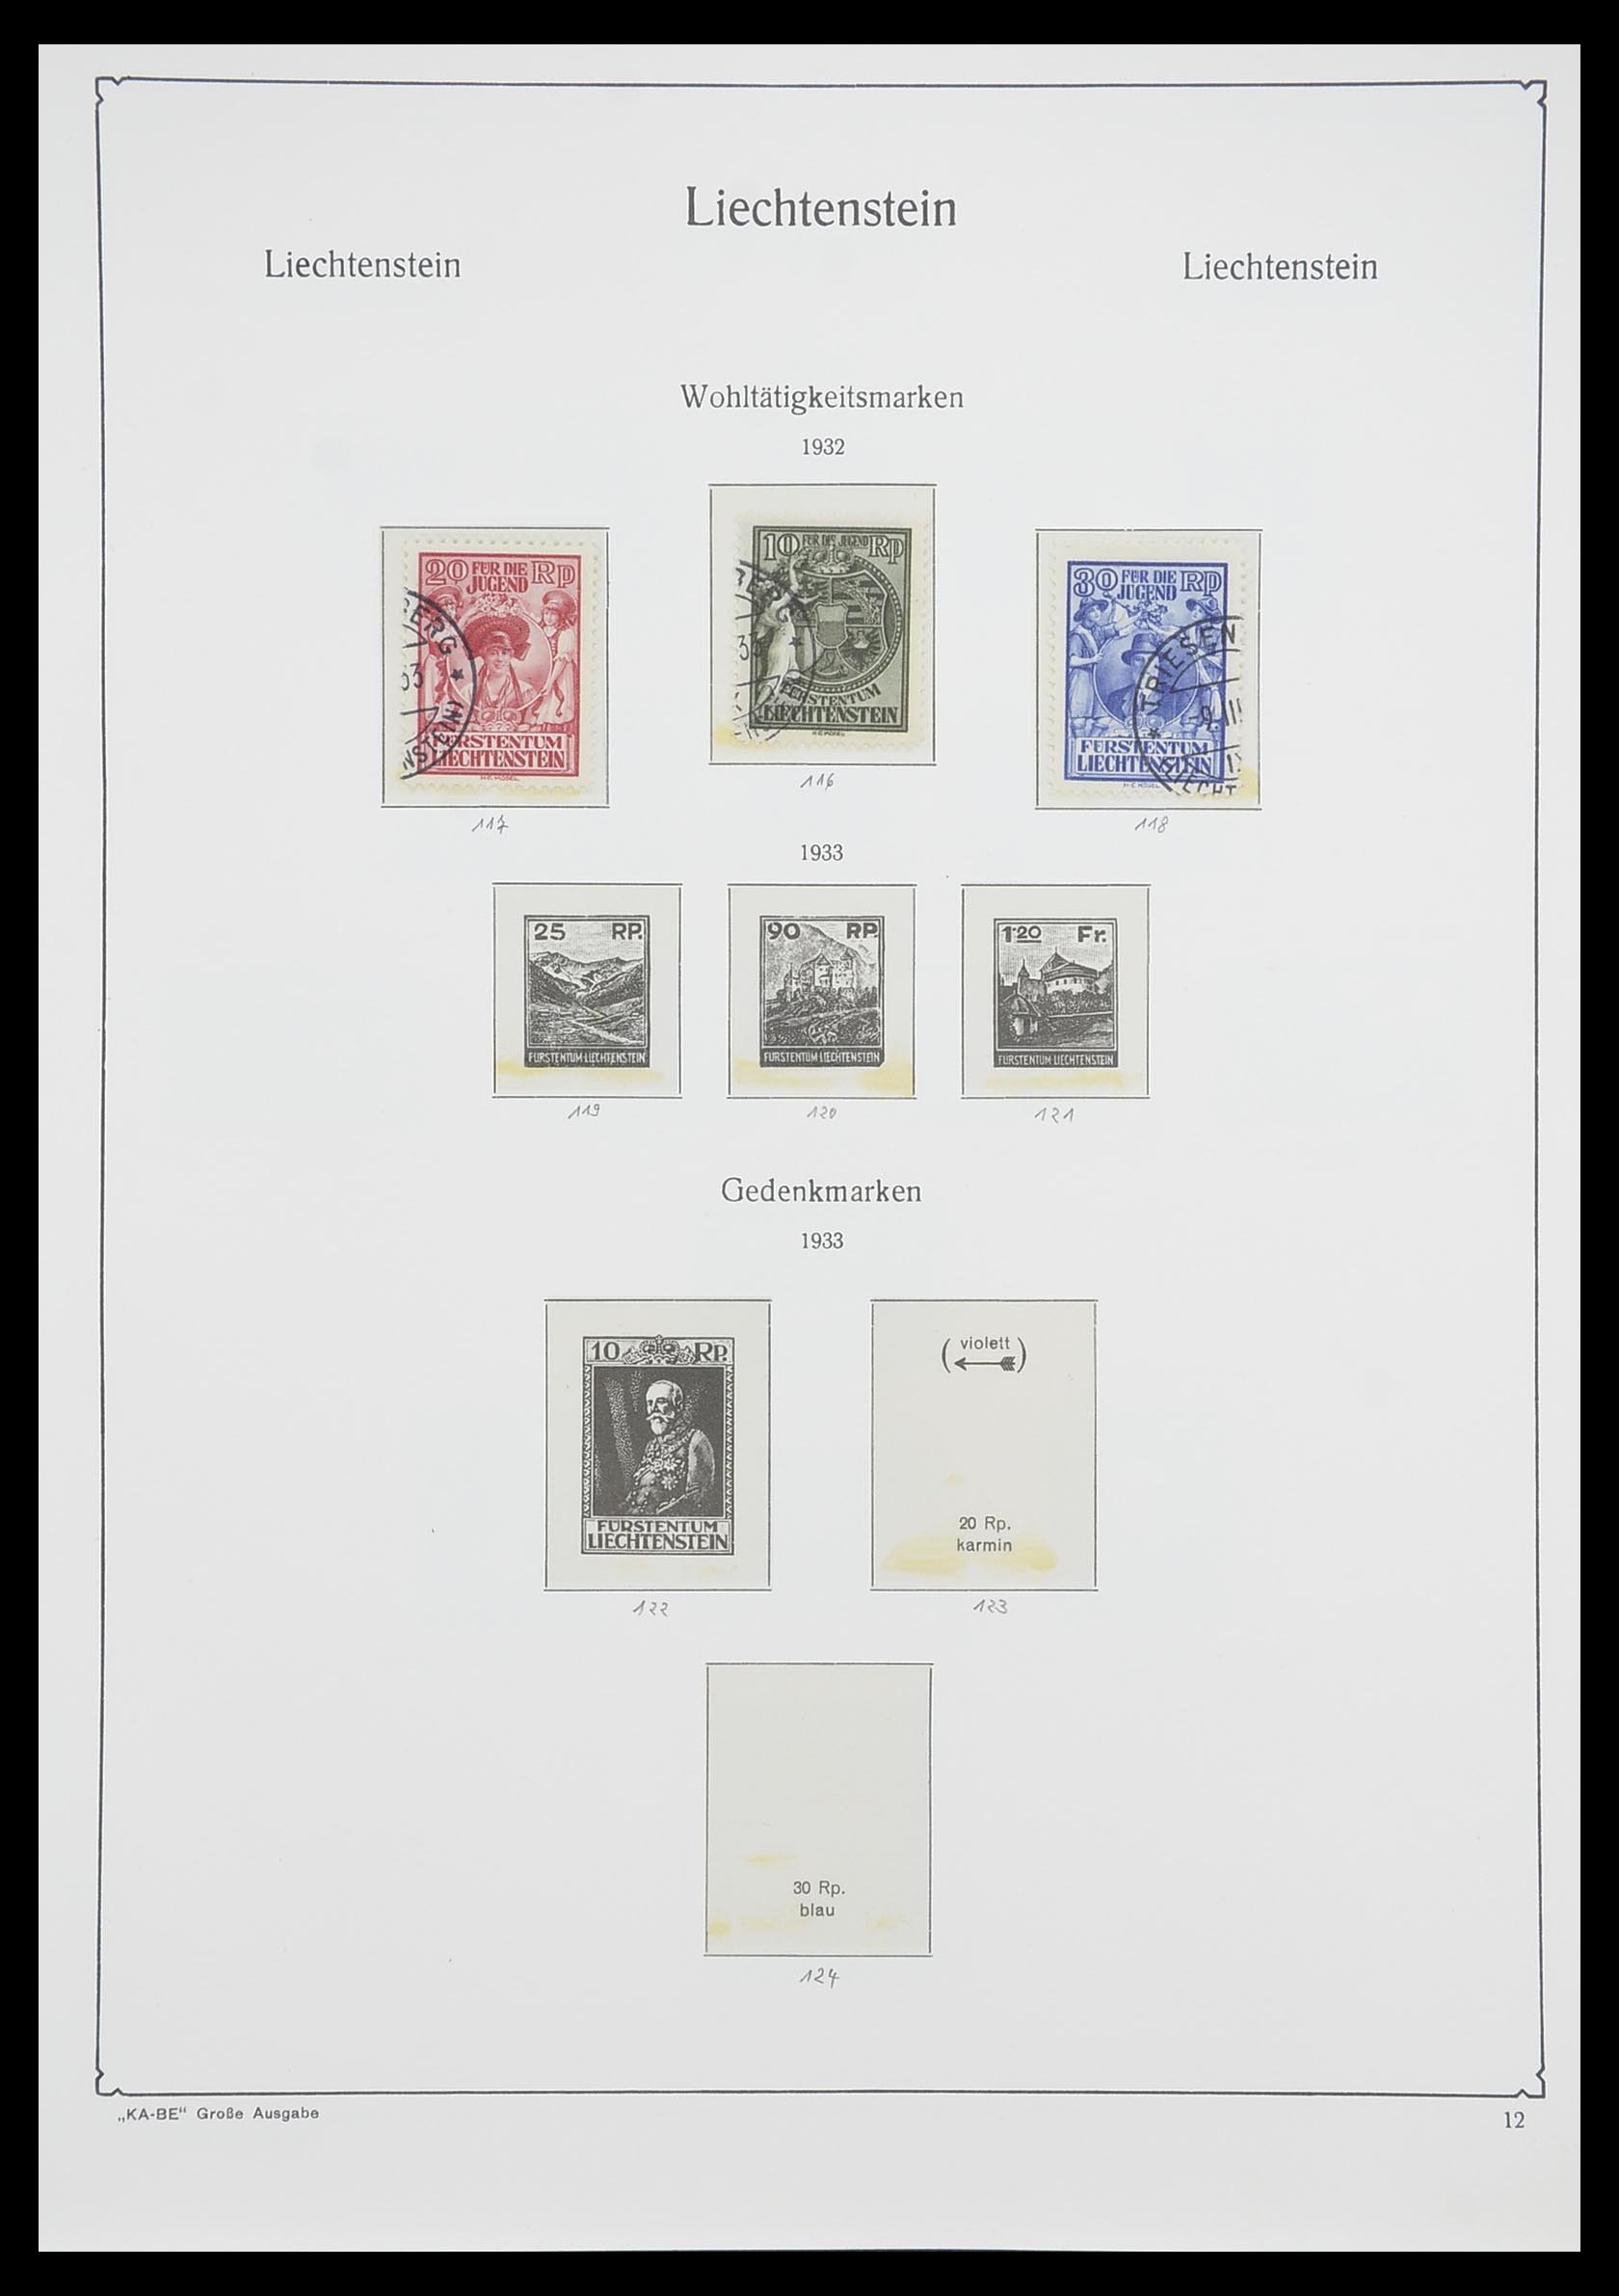 33493 014 - Stamp collection 33493 Liechtenstein 1912-2008.